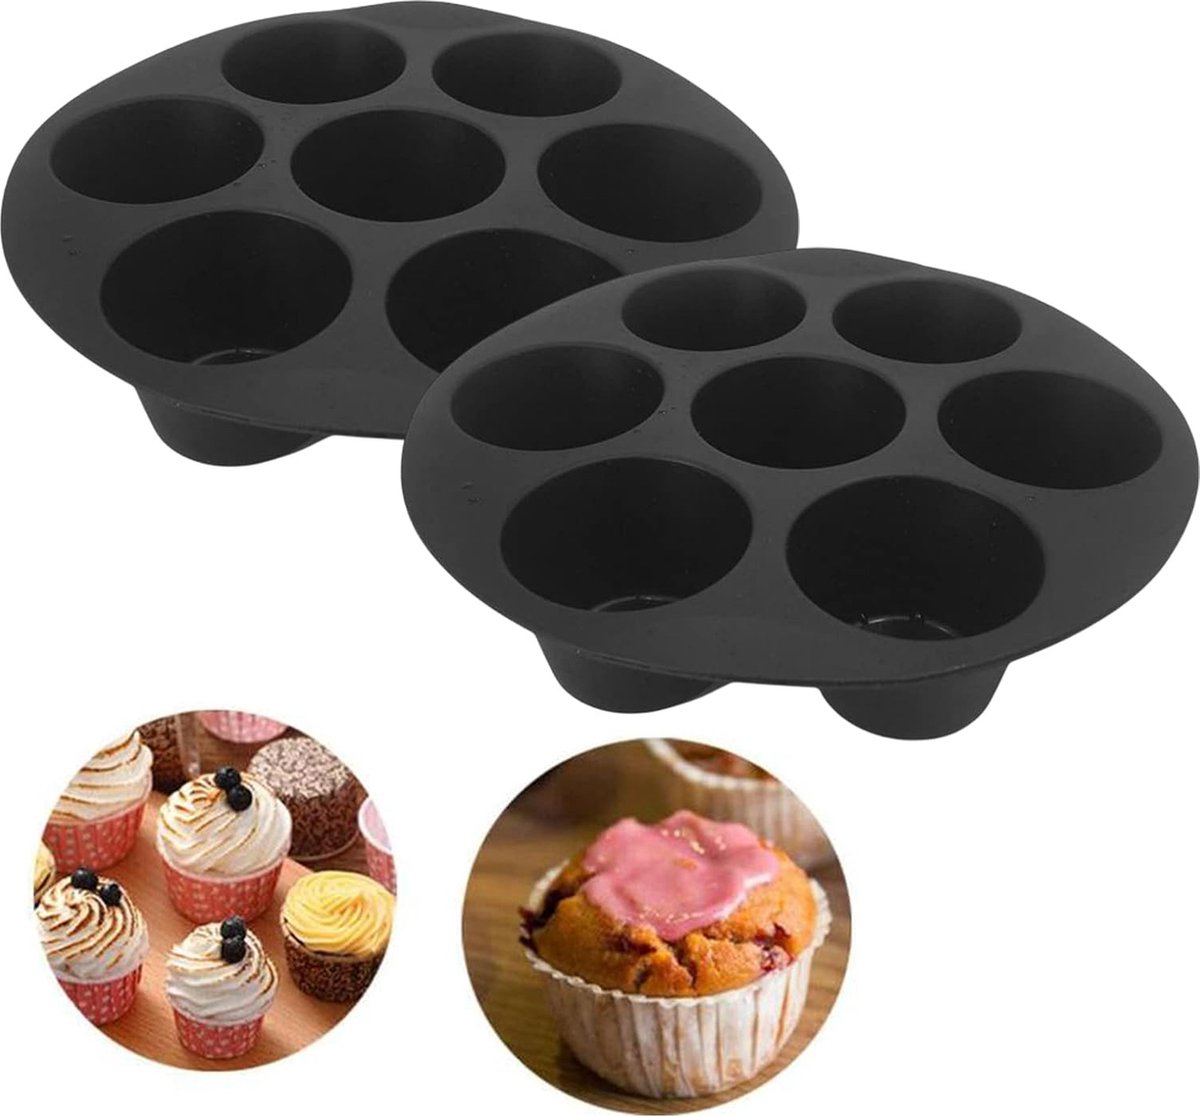 2 stuks anti-aanbak siliconen muffinvorm siliconen muffinpan anti-aanbaklaag muffins bakvorm voor cake air fryer oven voor cupcakes brownies, taarten pudding (17,2 cm, zwart)